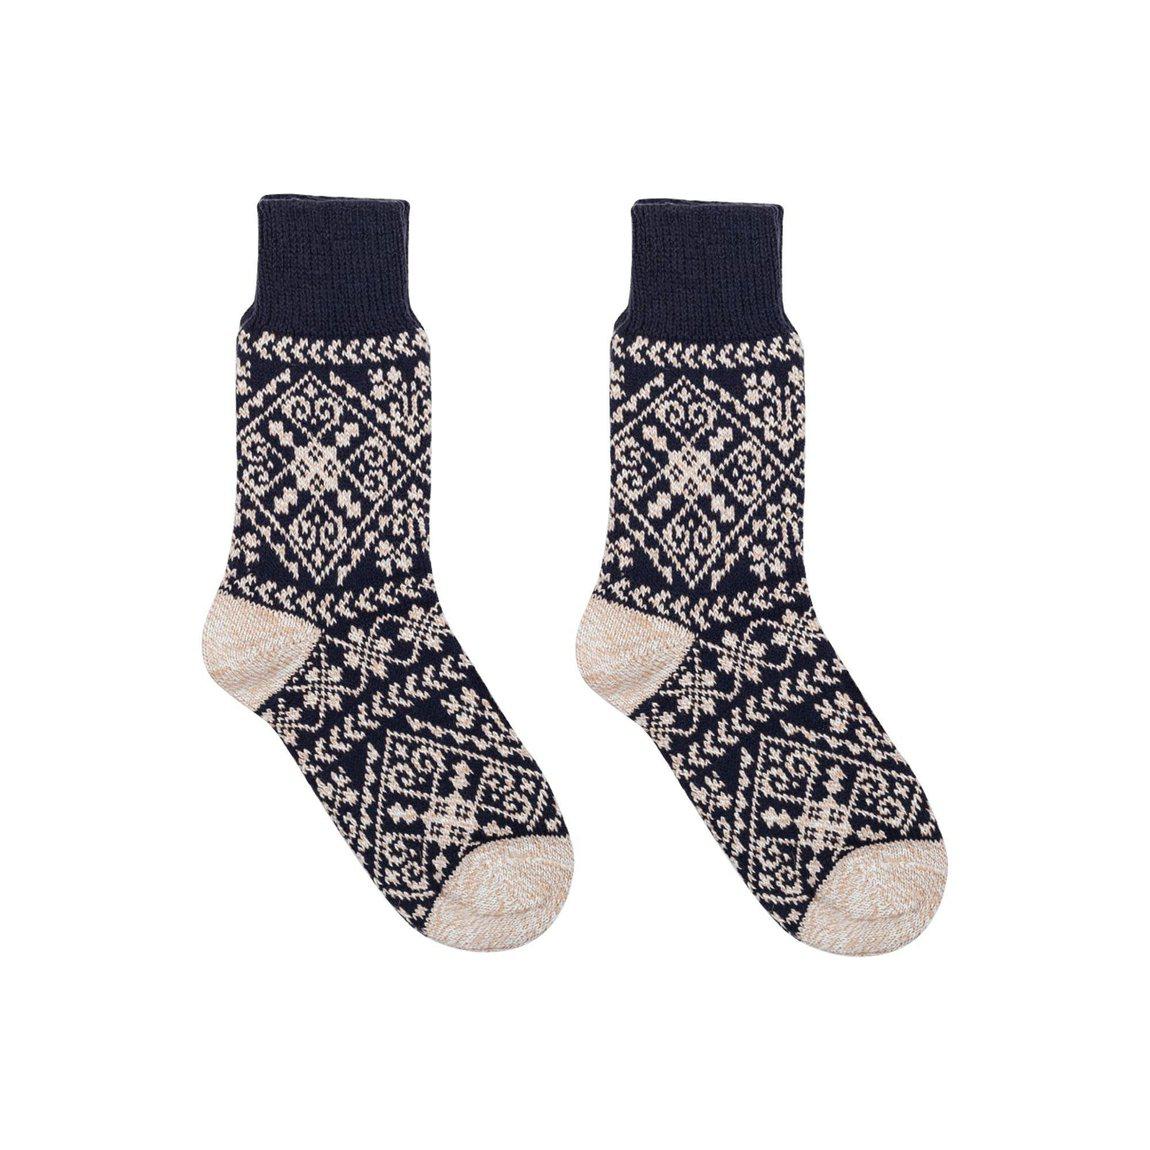 Nordic Wools Cozy Zelta Socks - Navy - Unisex scandinavian 